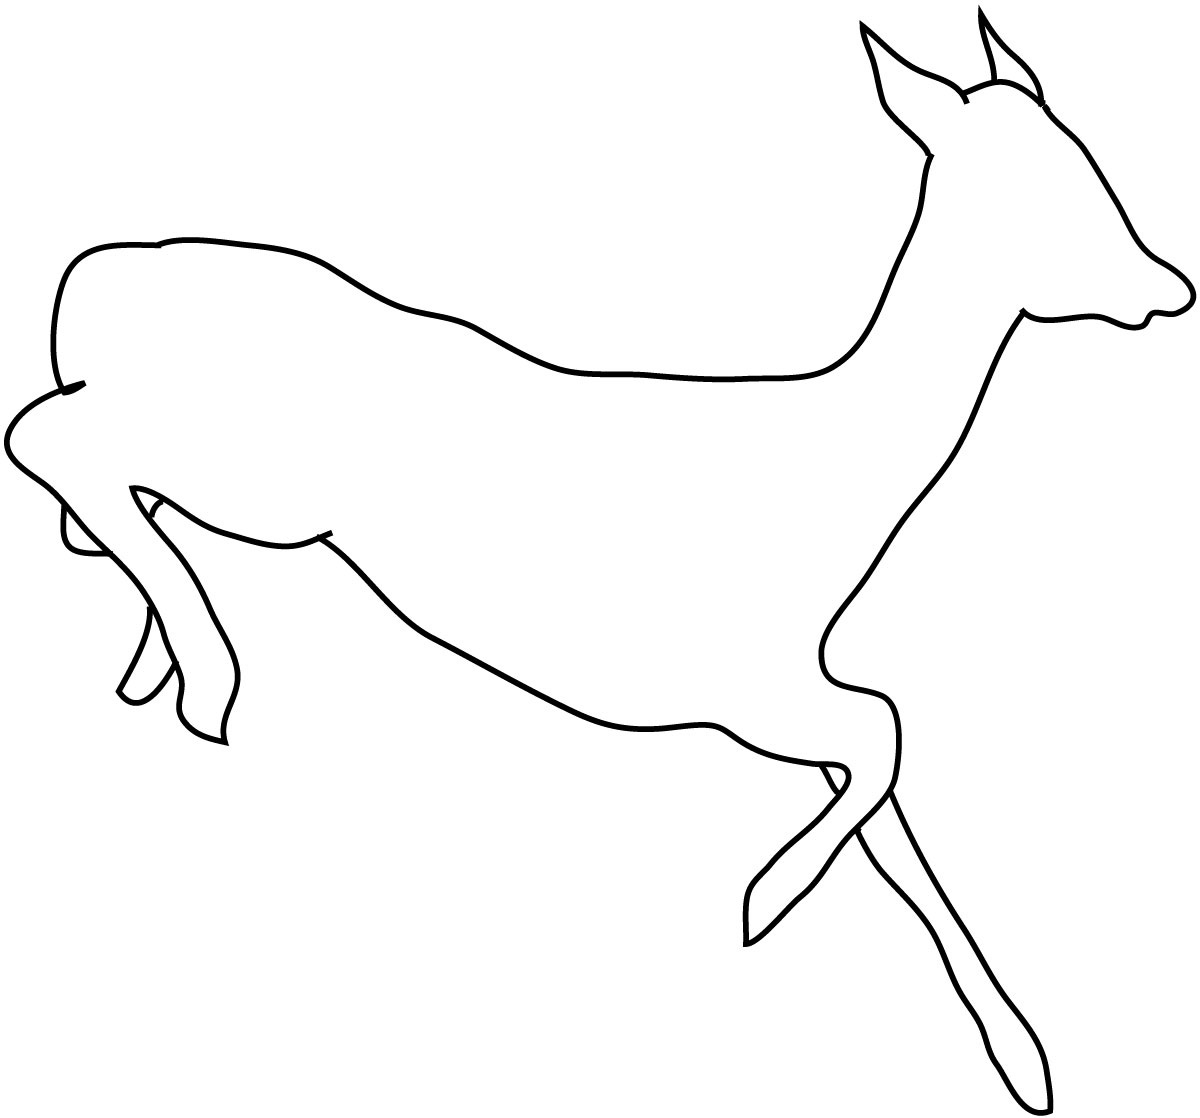 silhouette sketch of deer running